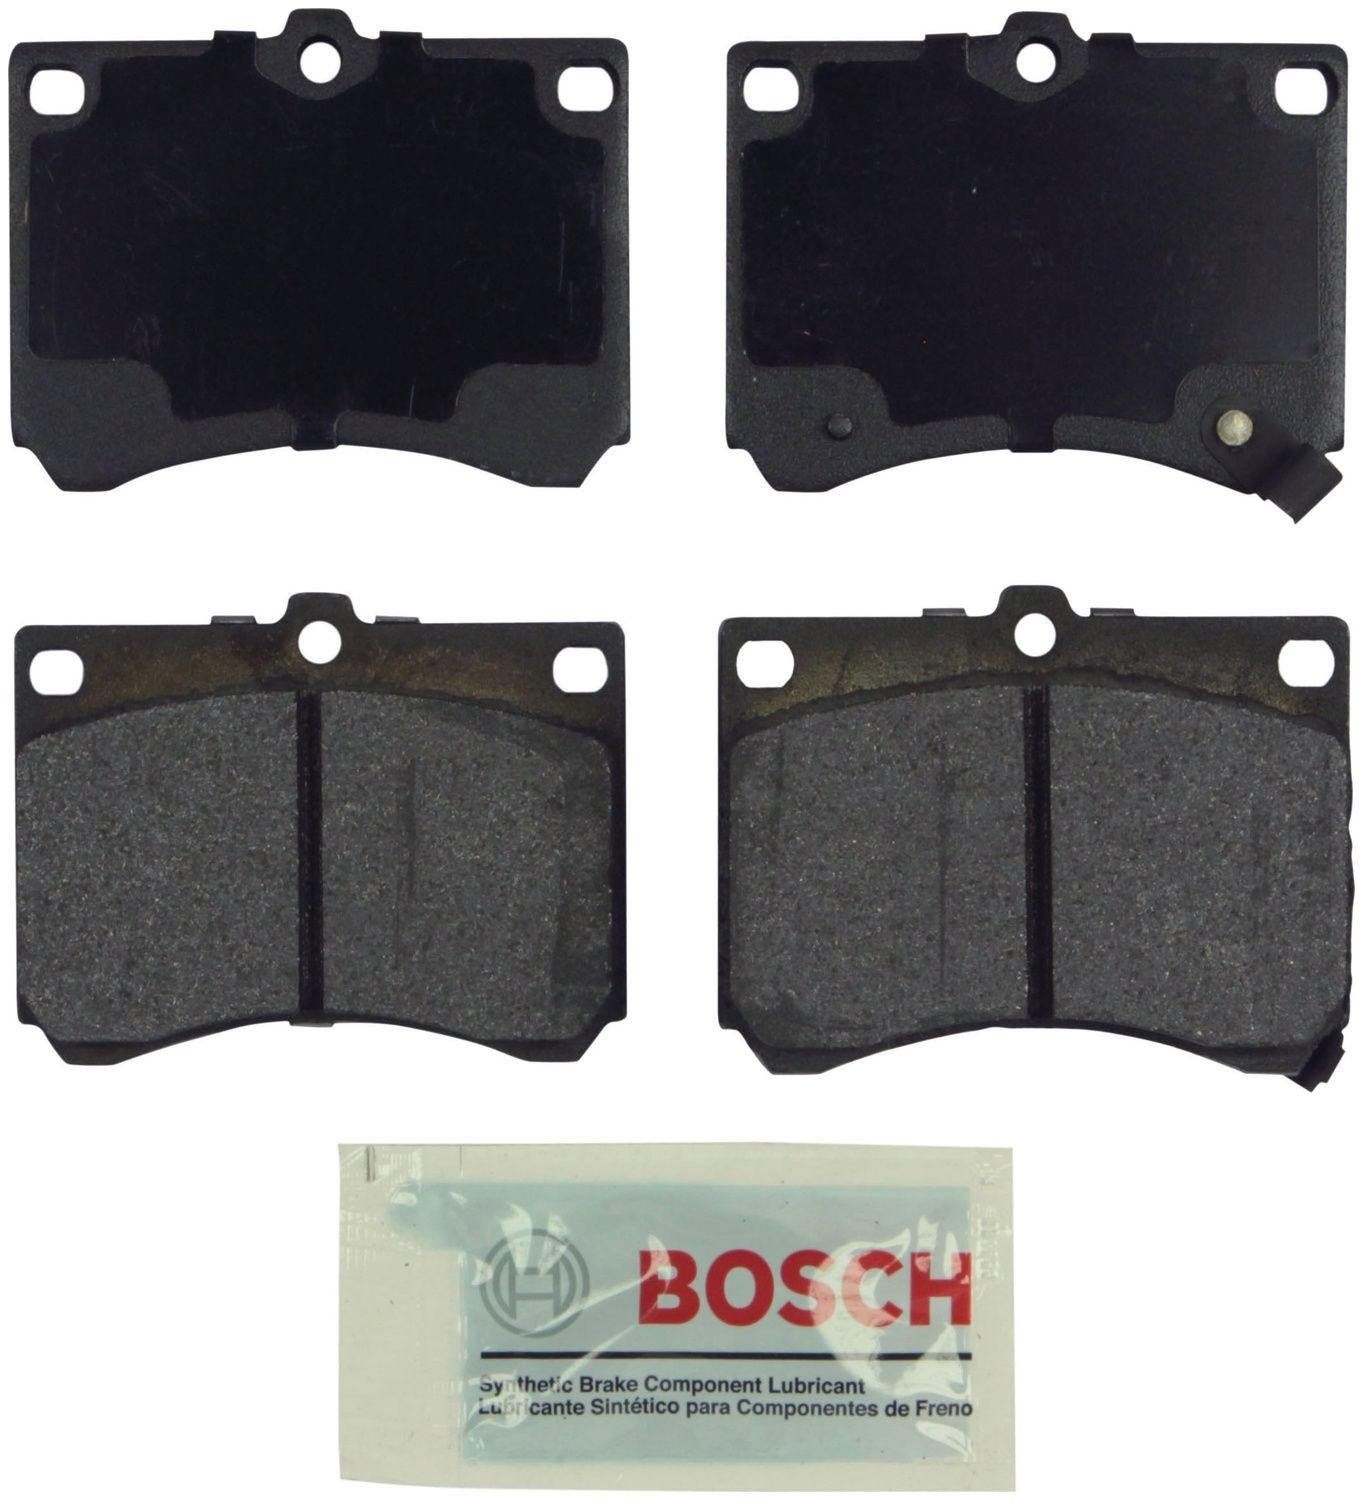 BOSCH BRAKE - Bosch Blue Ceramic Brake Pads - BQC BE473